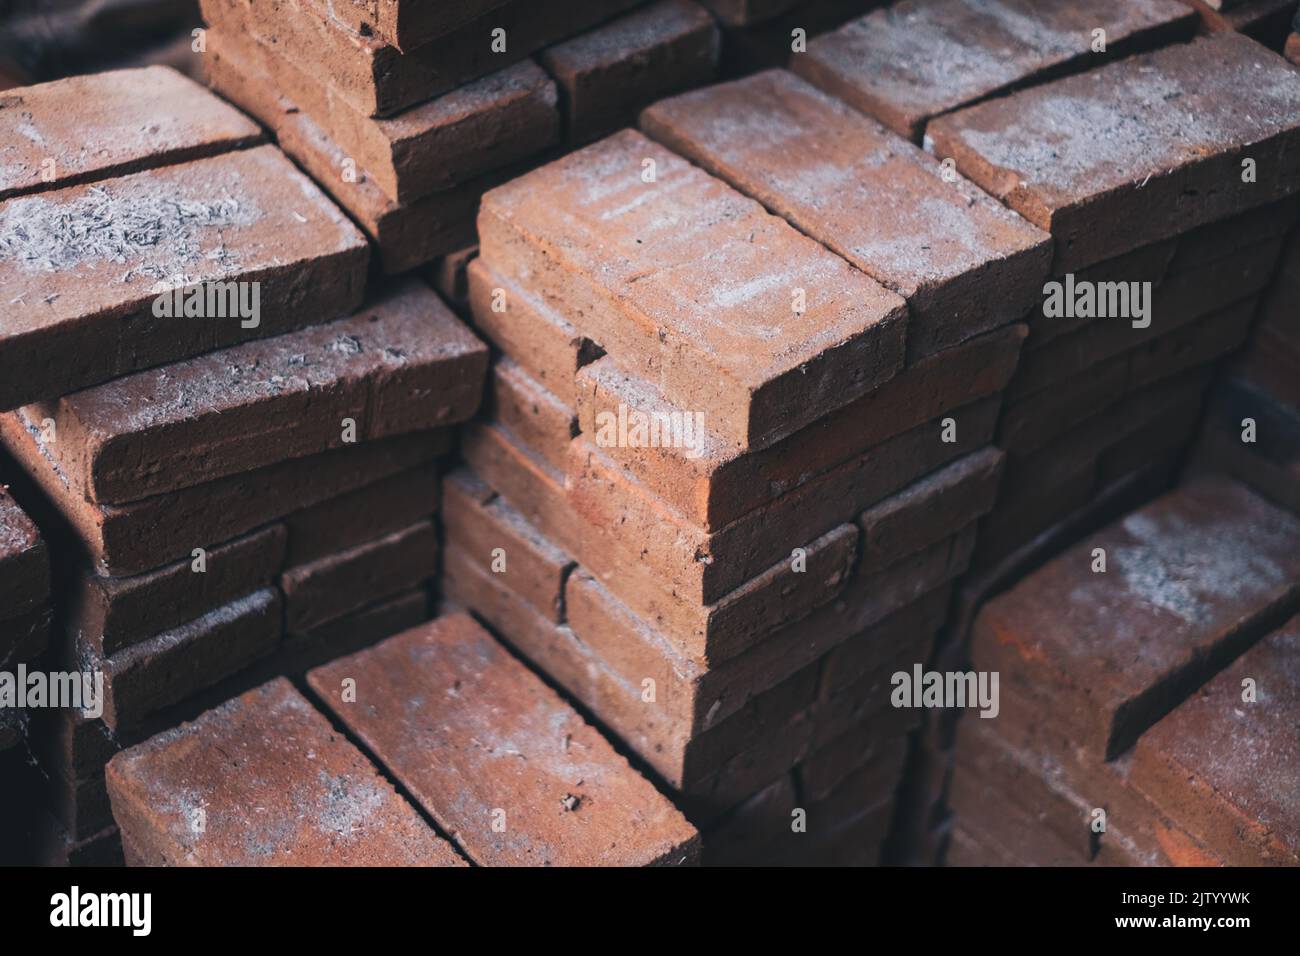 Stapel von neu hergestellten festen Ziegelsteinen aus Lehm (Backerde), die für die Landschaftsgestaltung und andere Gebäude- und Bauzwecke verwendet werden. Selektiver Fokus. Stockfoto